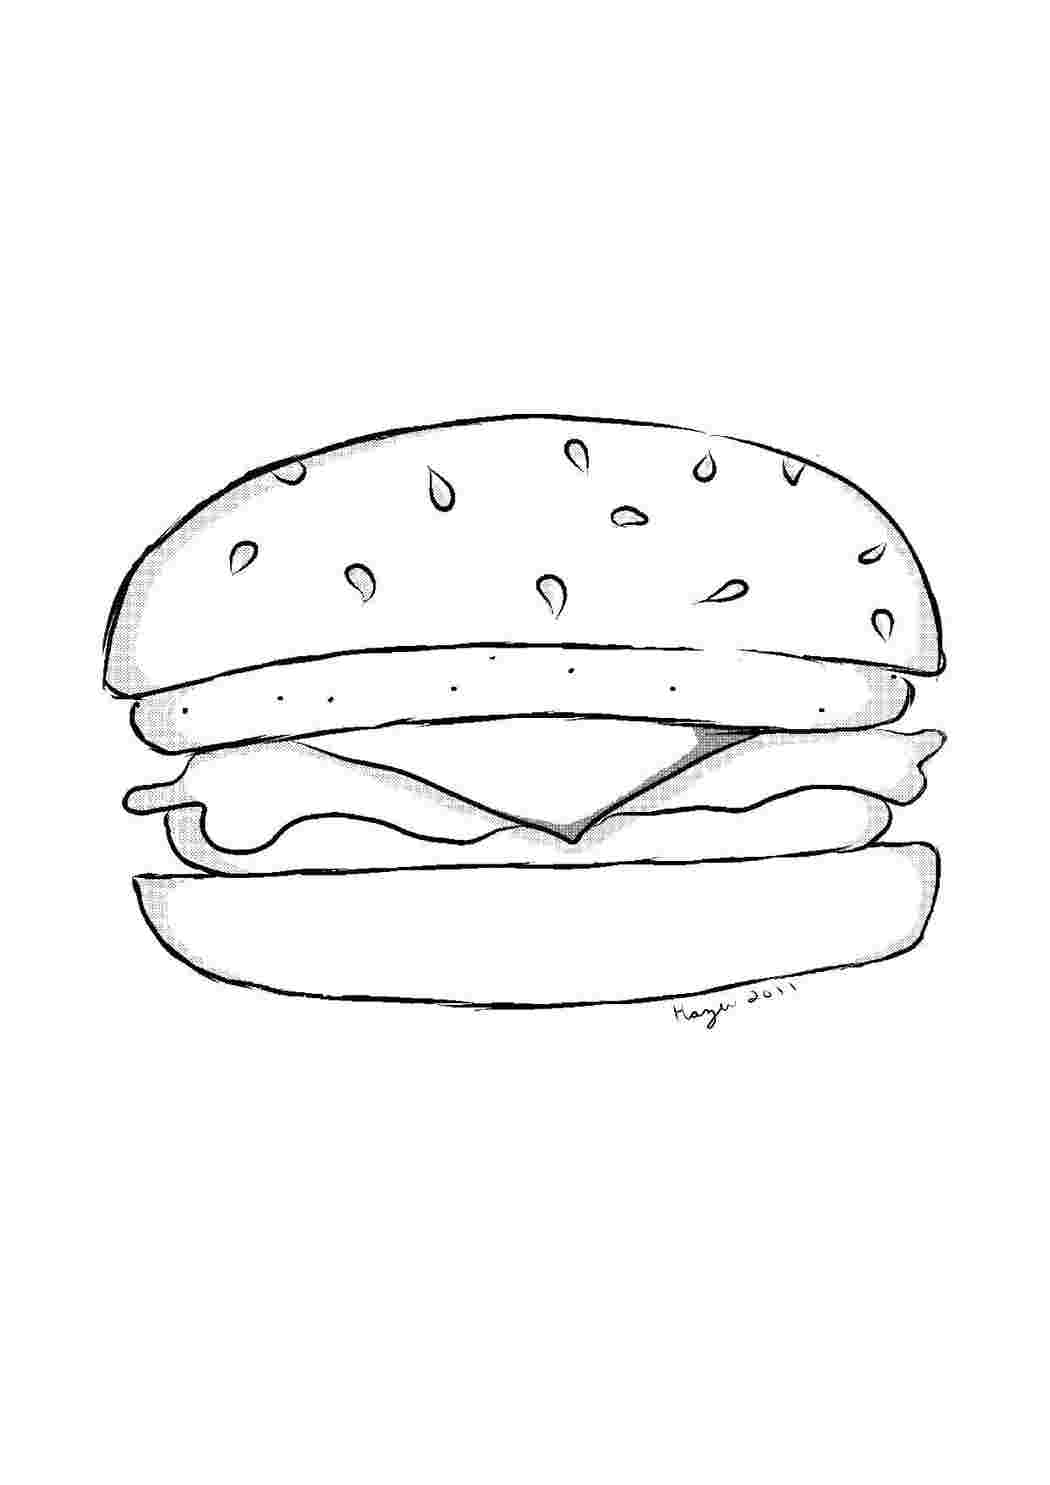 Бесплатные раскраски гамбургер. Распечатать раскраски бесплатно и скачать раскраски онлайн.